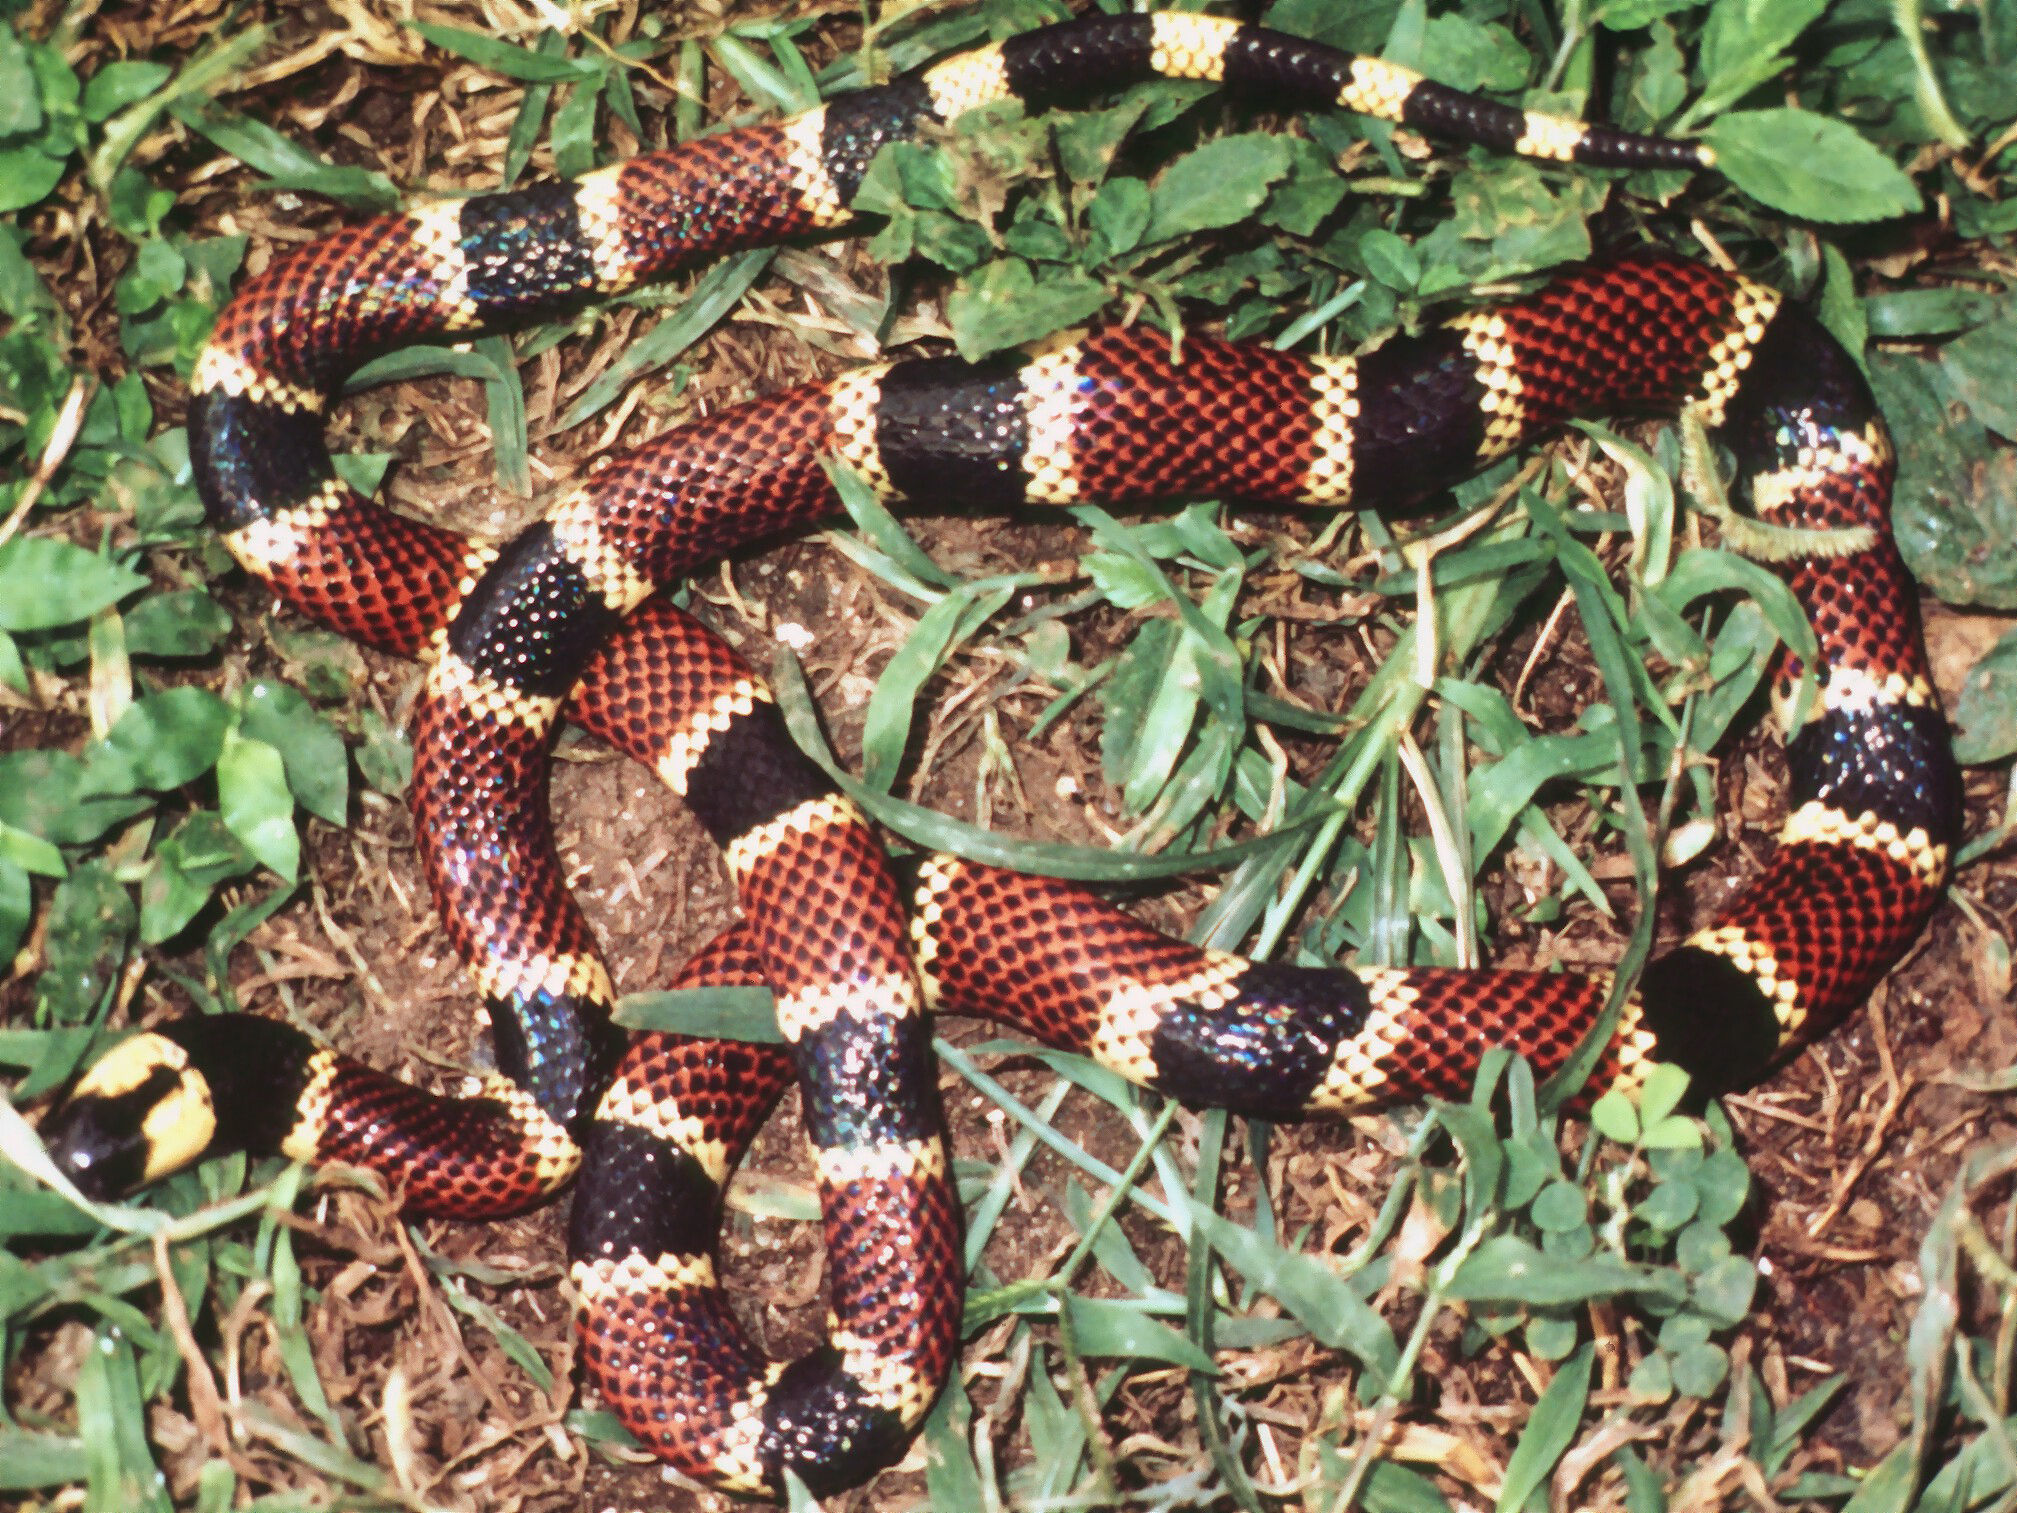 Image of Allen's Coral Snake